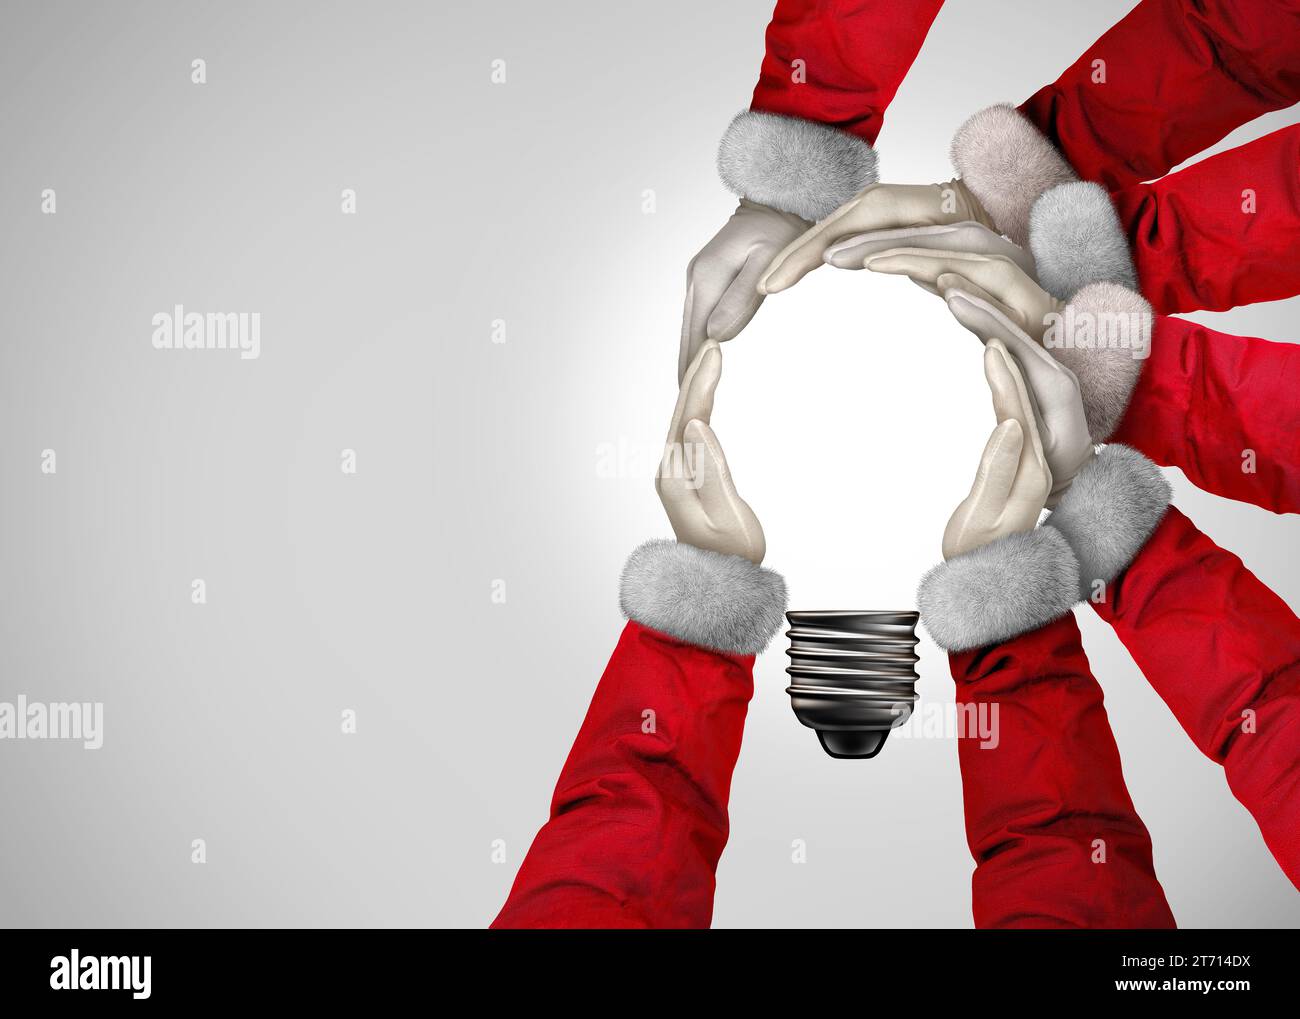 Idées de Noël comme un groupe de personnes du Père Noël joignant les mains ensemble dans la forme d'une ampoule d'inspiration comme une nouvelle année de vacances d'hiver com Banque D'Images